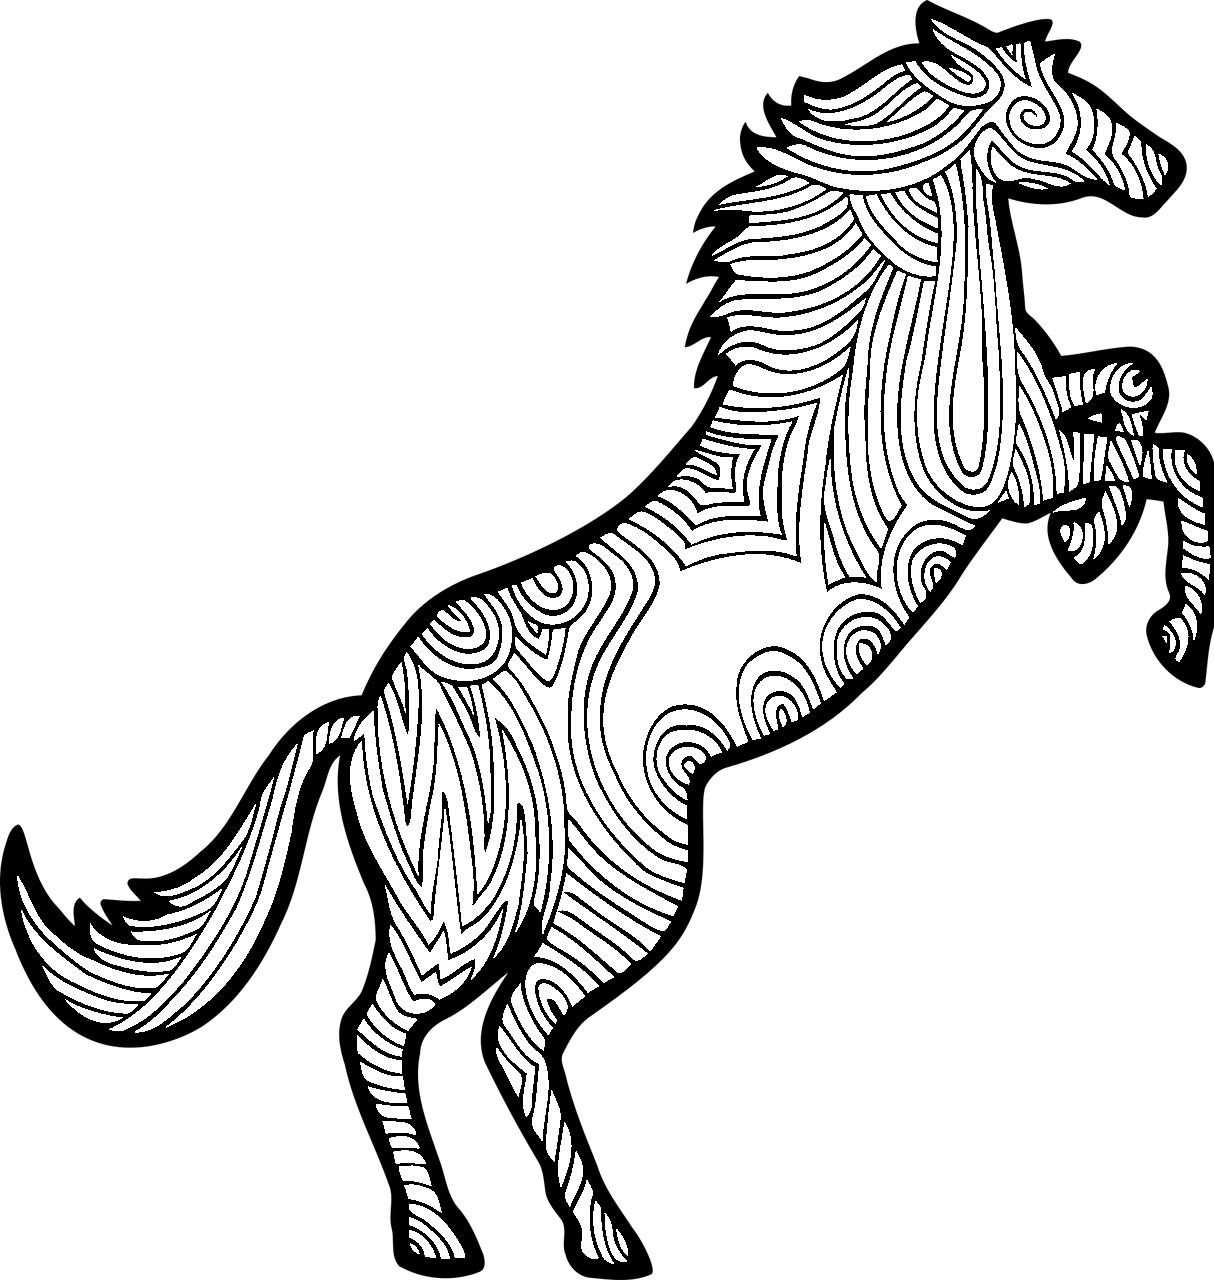 Disegno da colorare di cavallo mandala